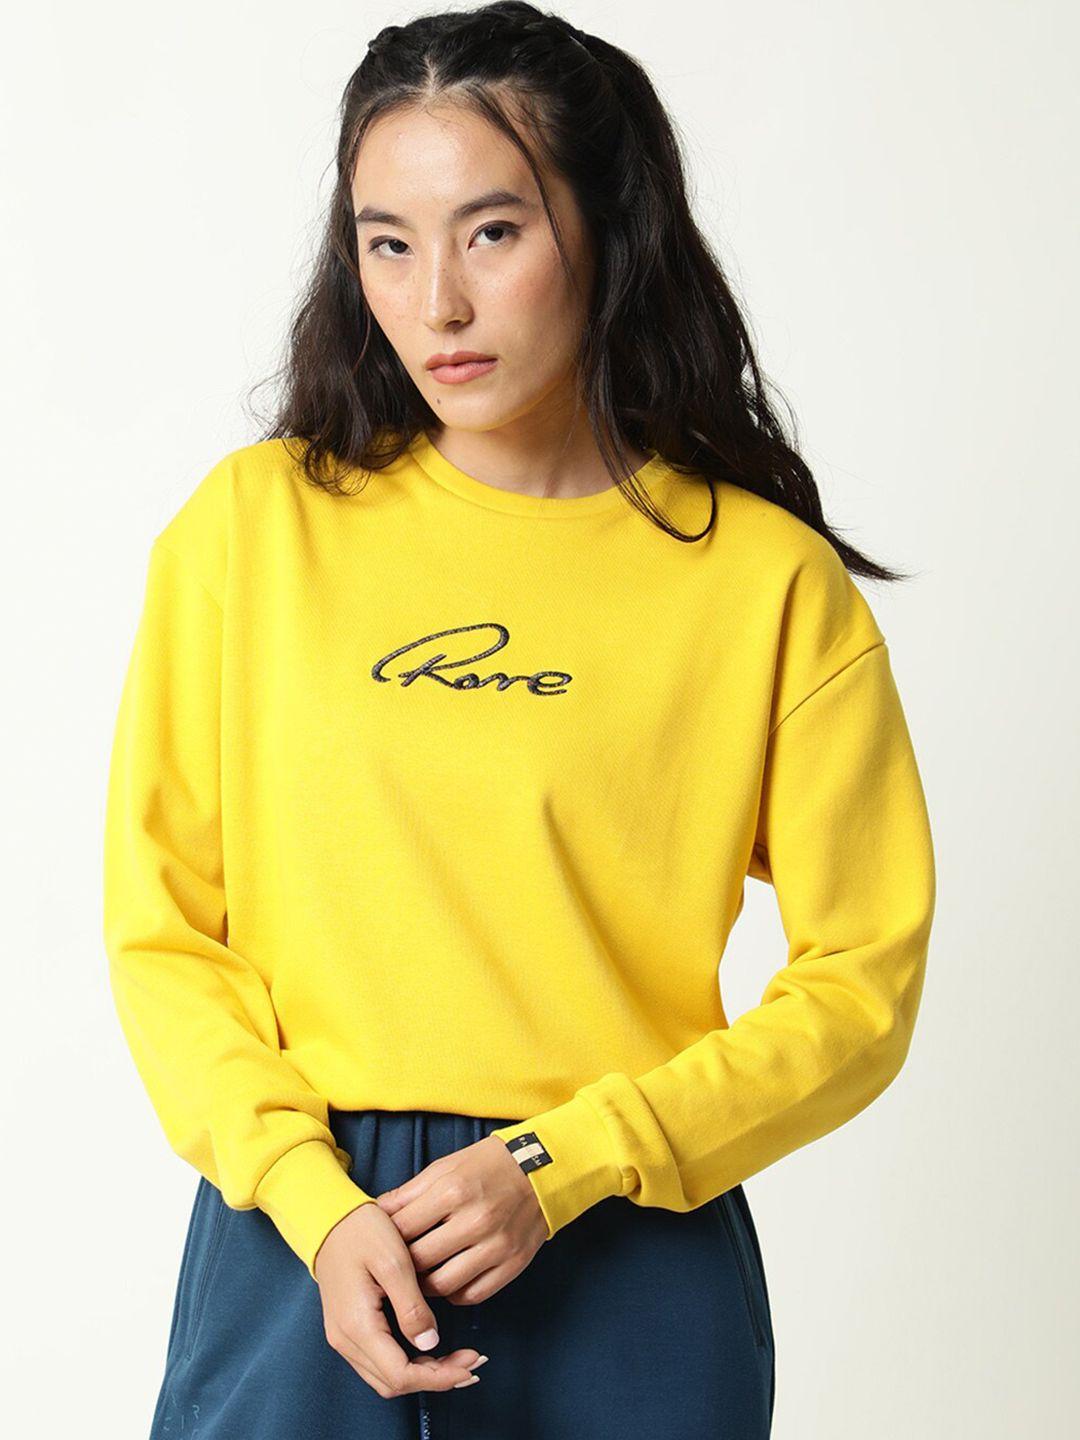 rareism women yellow printed sweatshirt